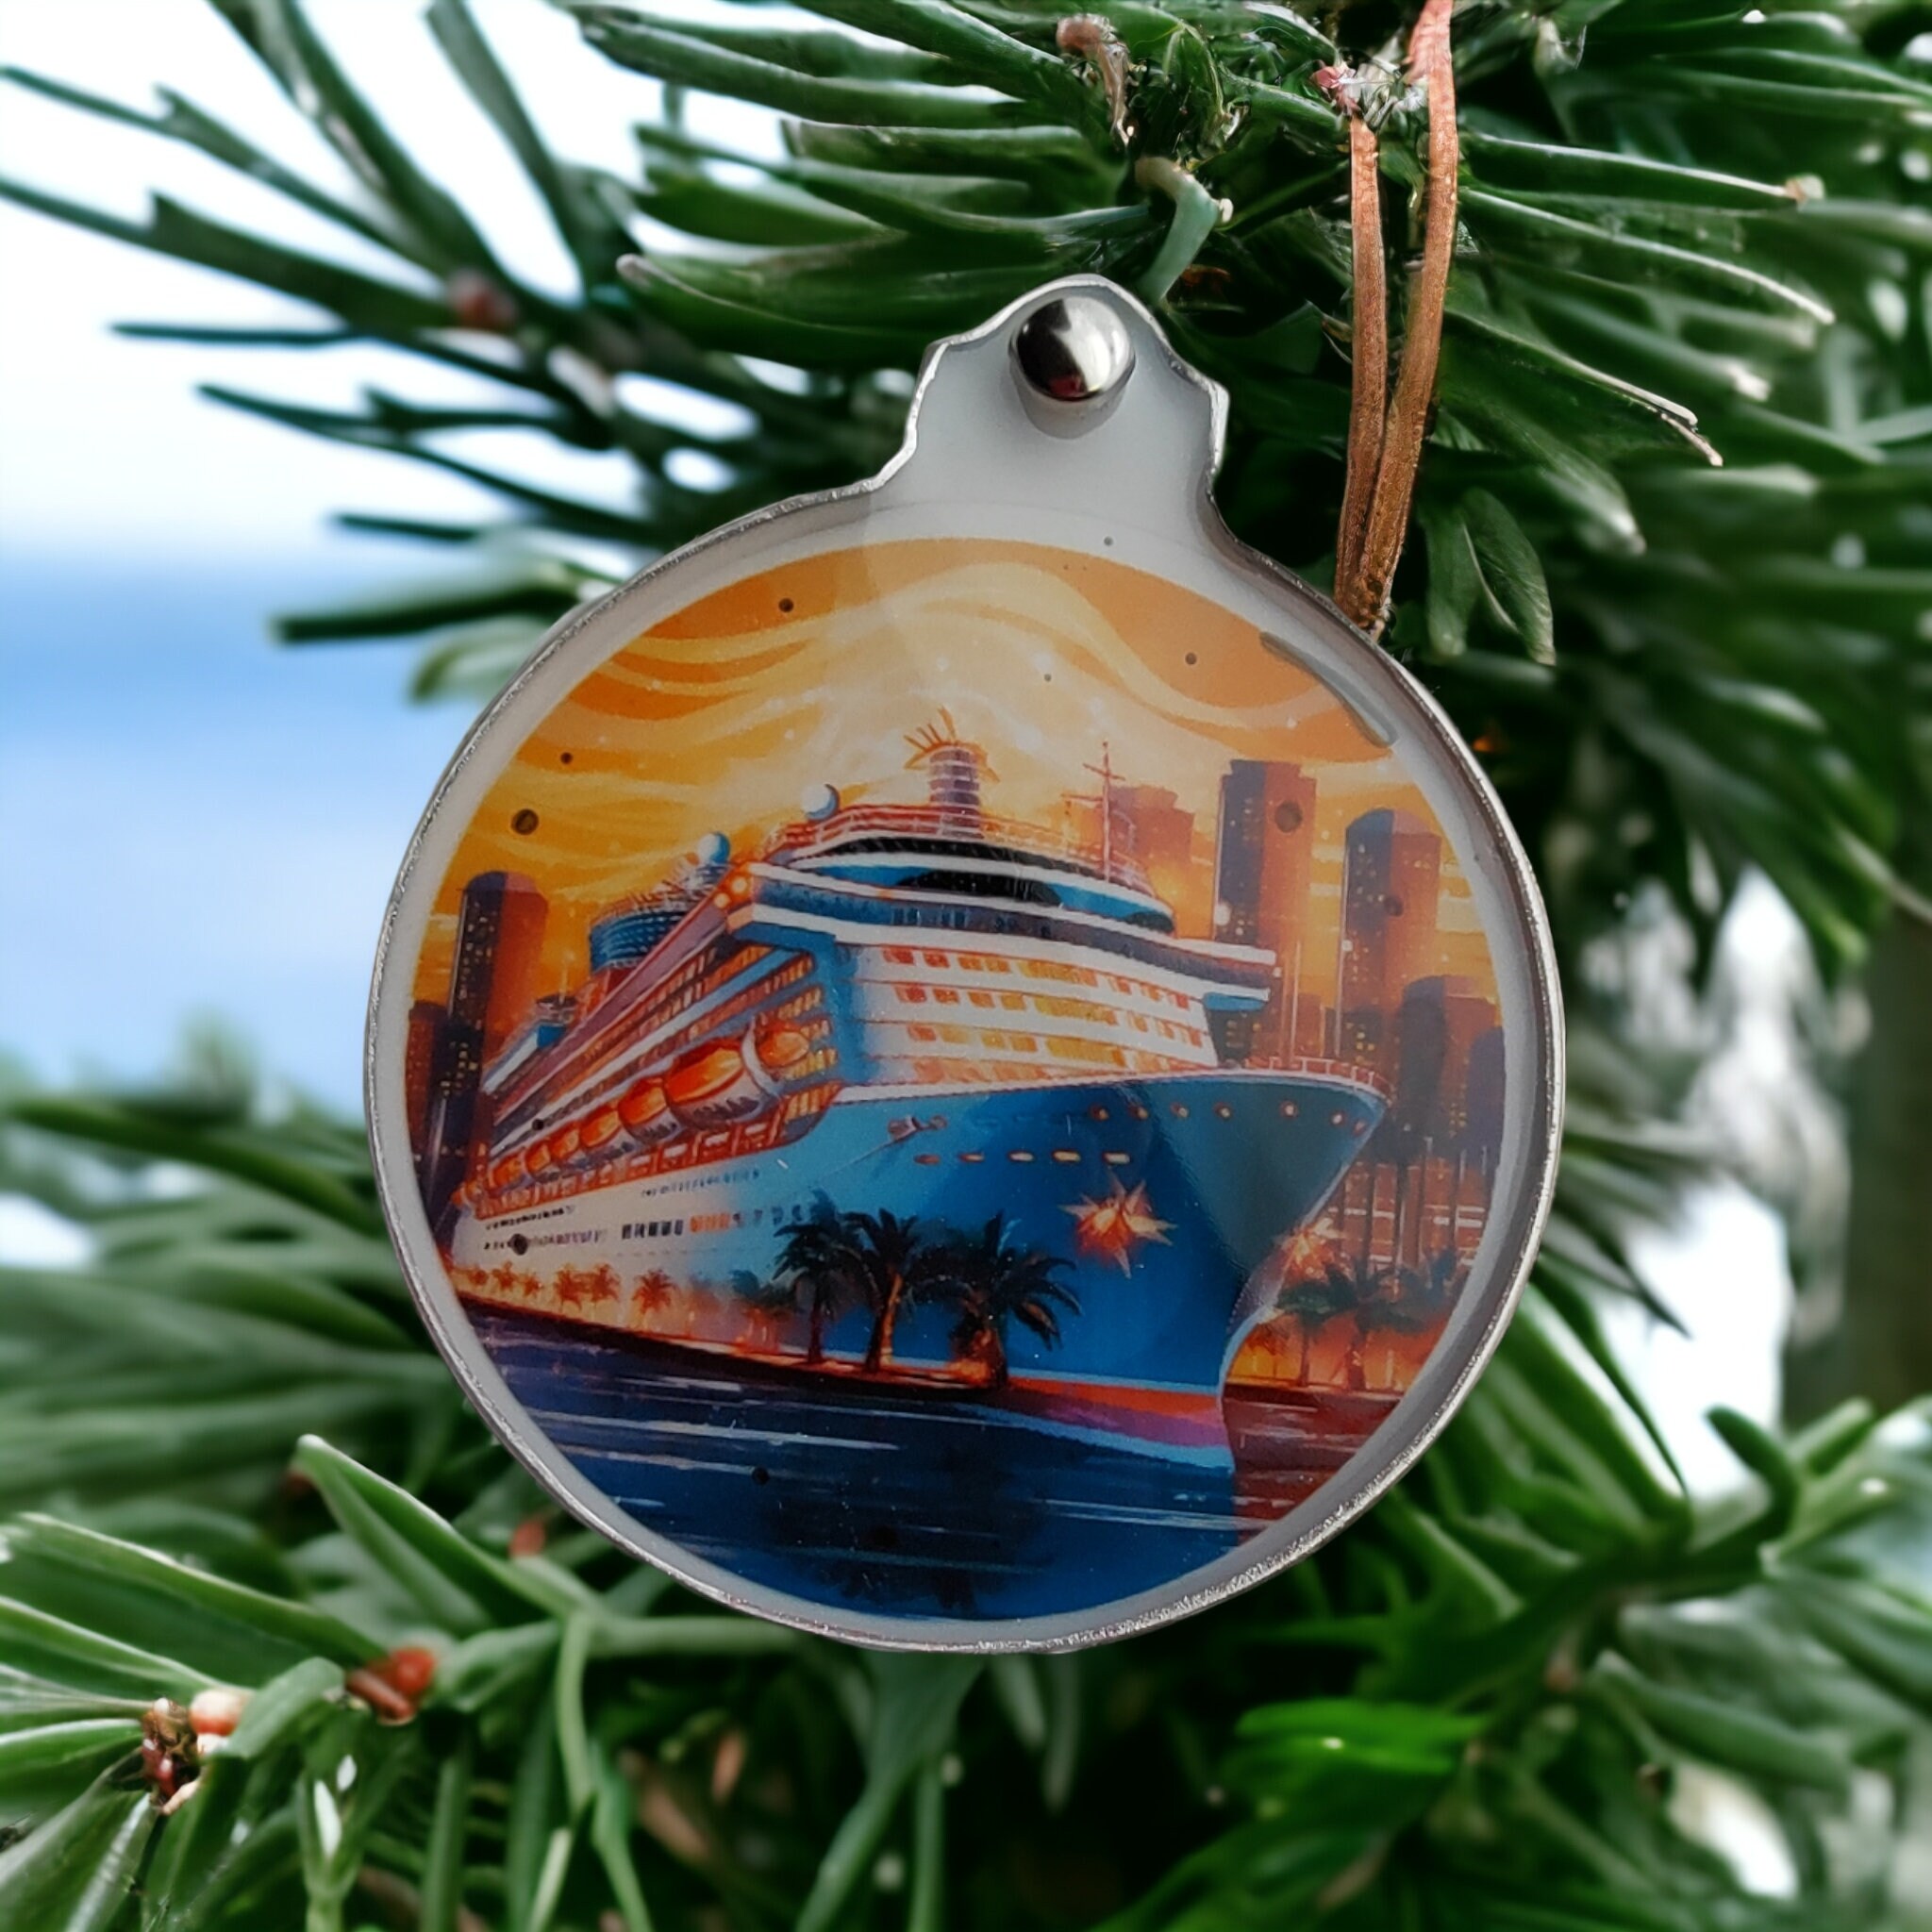 Baumanhänger "Kreuzfahrtschiff" Ornaments auf einer runden Grußkarte inkl. Kuvert